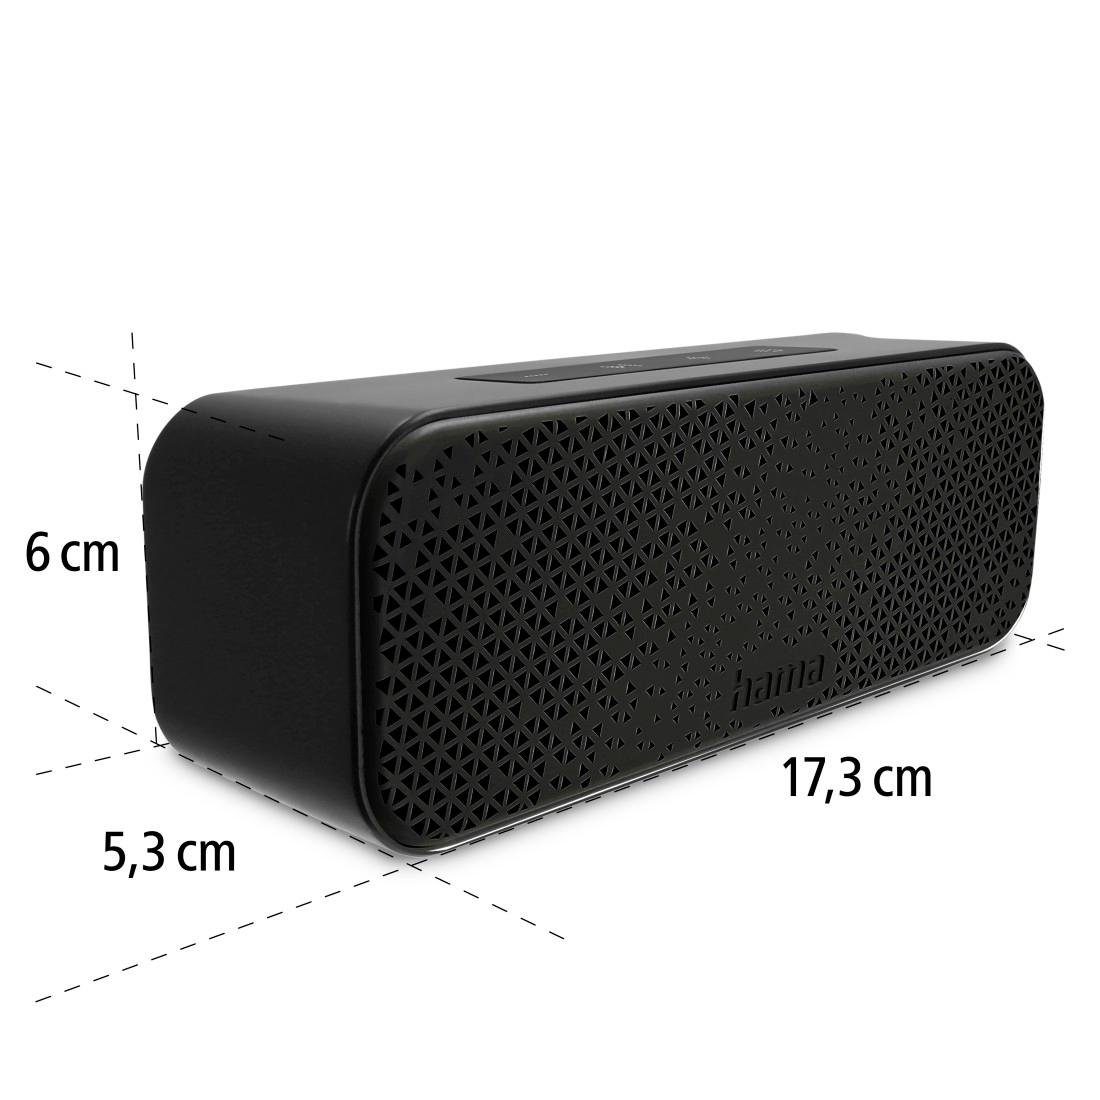 Tragbare Bluetooth-Lautsprecher (Outdoor-Musikbox schwarz W, Bluetooth IPX4 8 Box, Hama spritzwassergeschützt Karabiner) mit